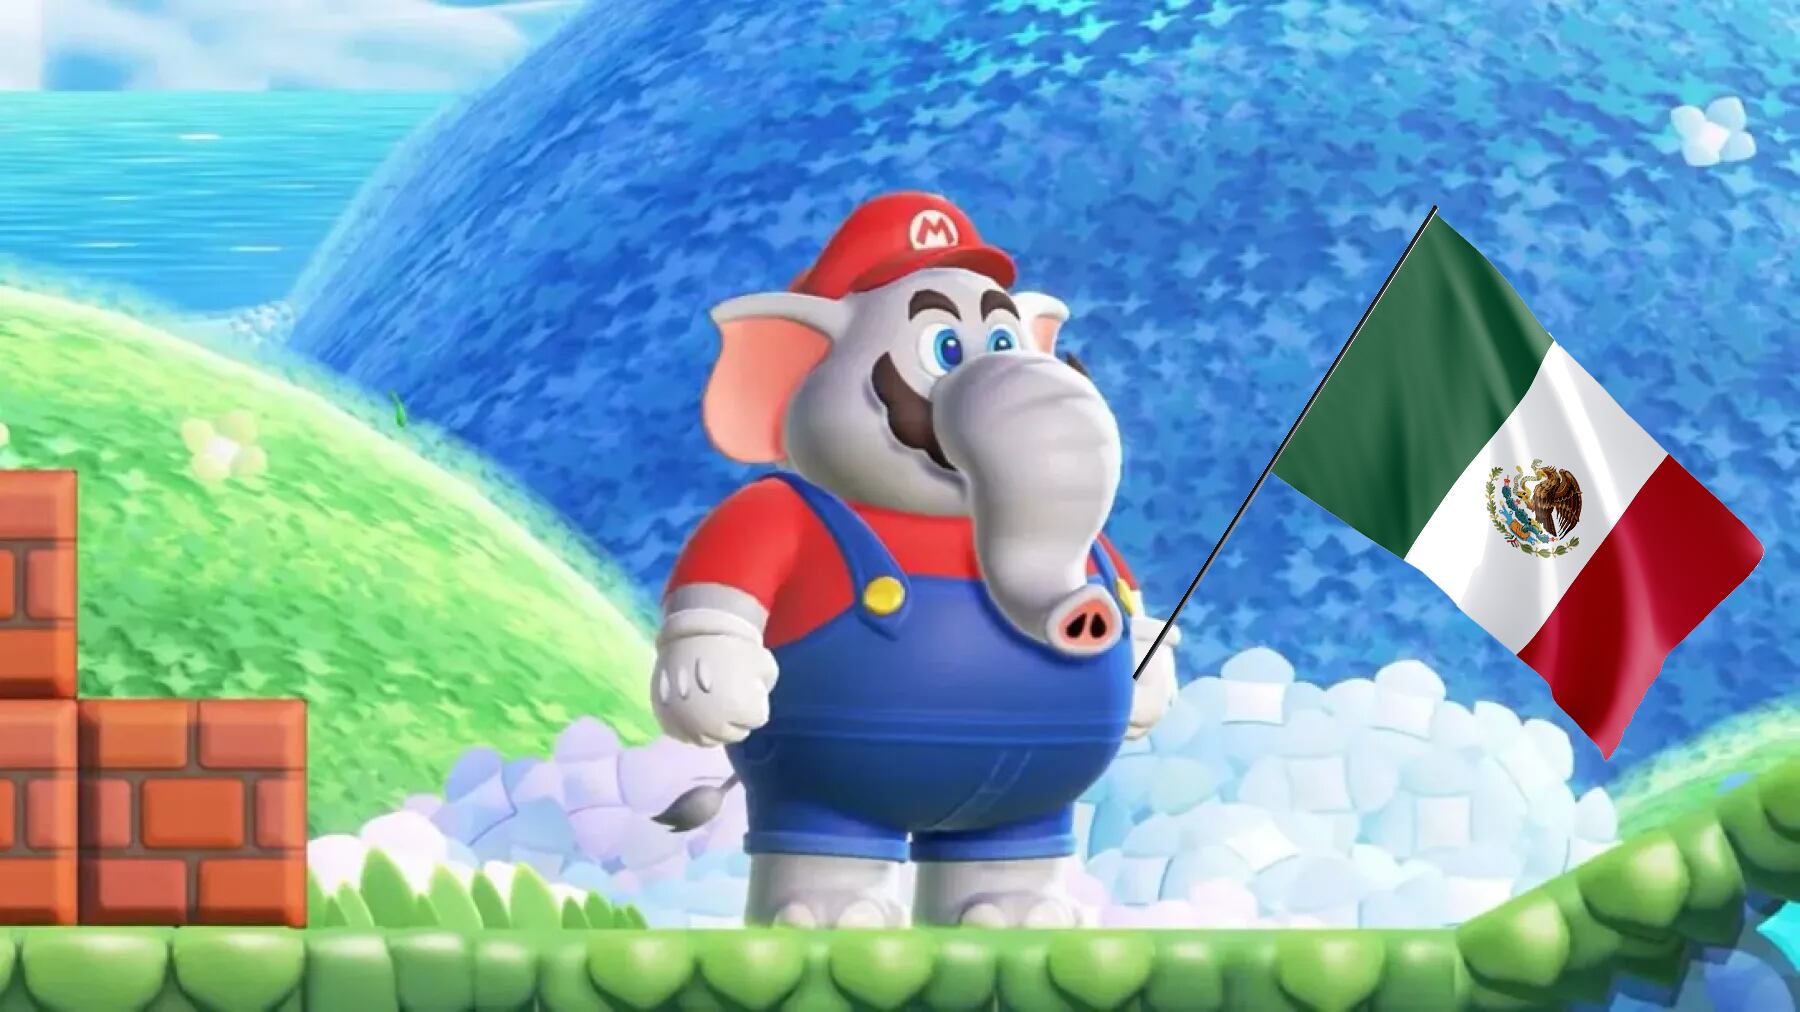 Nintendo revela algunos jugosos detalles sobre Super Mario Wonder y resulta que habrá doblaje latino al español. La duda es si Mario dirá algo local.